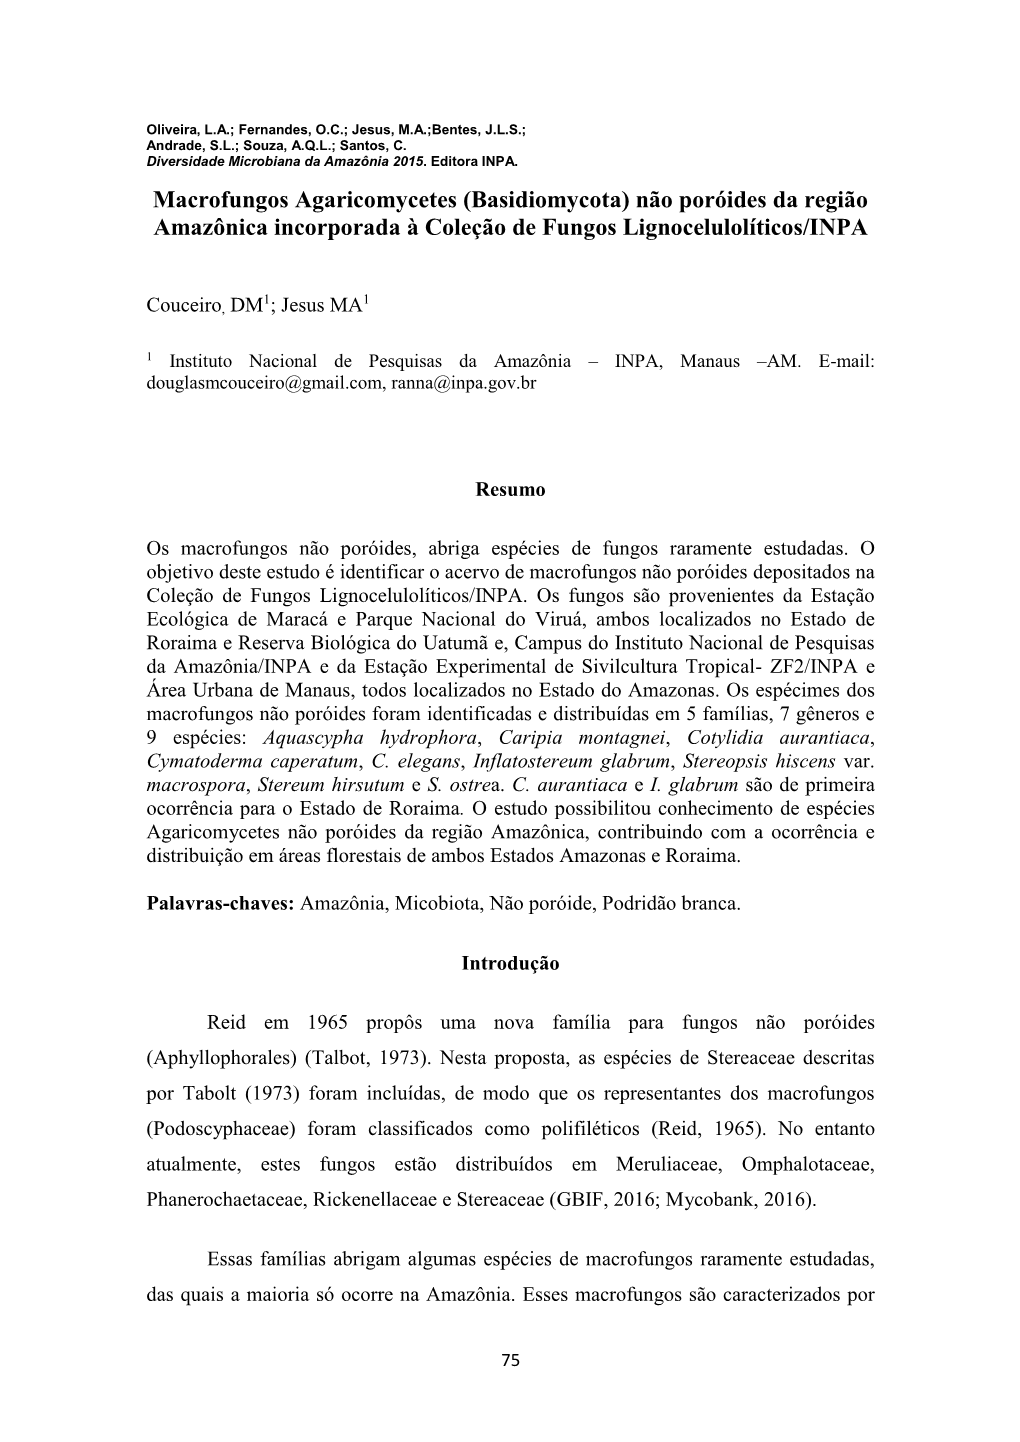 Macrofungos Agaricomycetes (Basidiomycota) Não Poróides Da Região Amazônica Incorporada À Coleção De Fungos Lignocelulolíticos/INPA